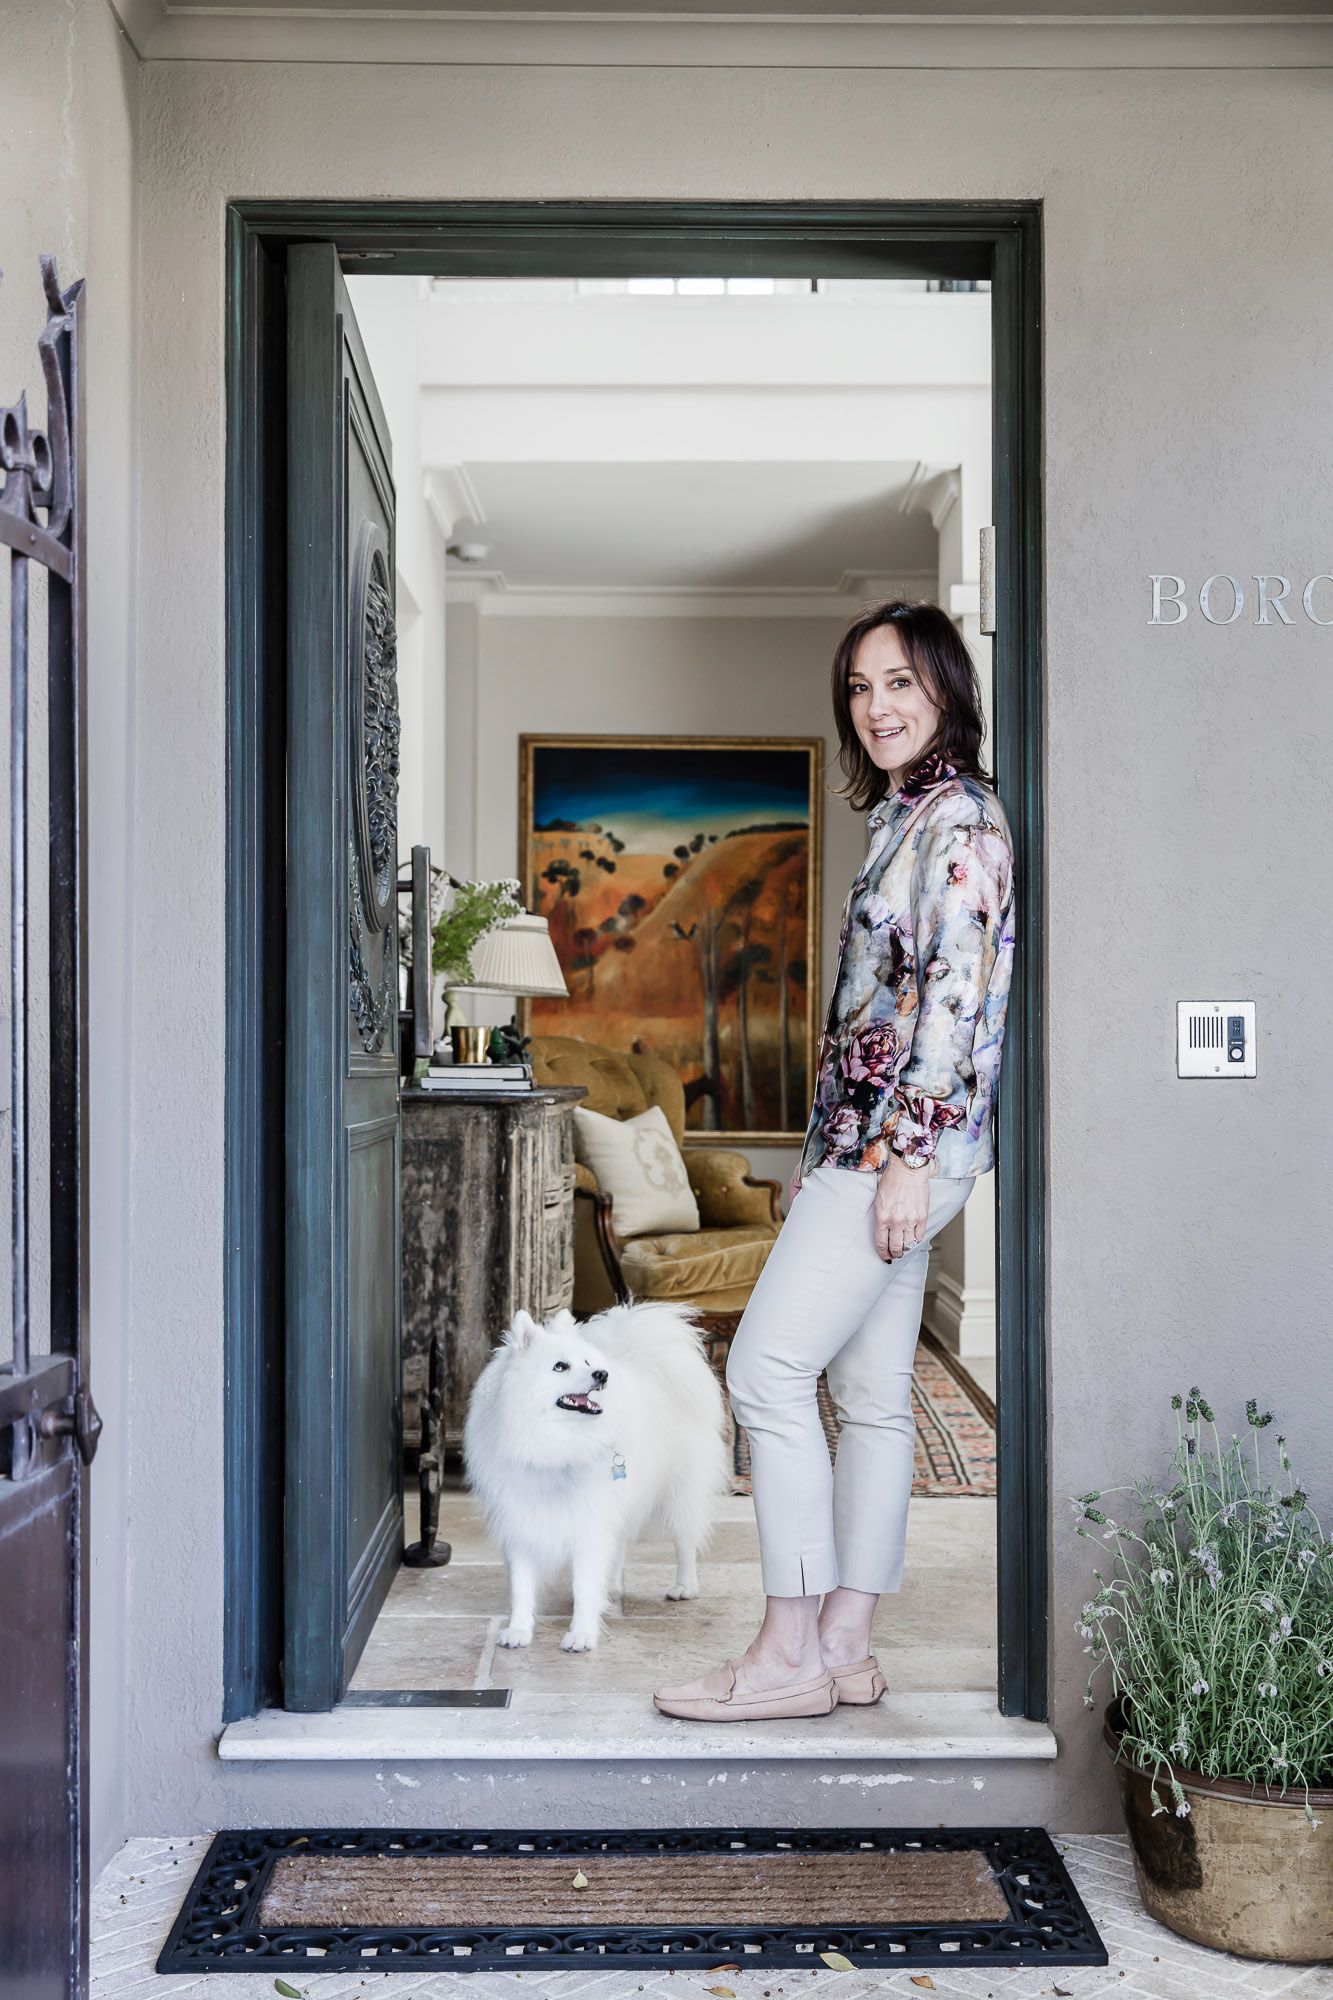 Marylou Sobel's home interior designer